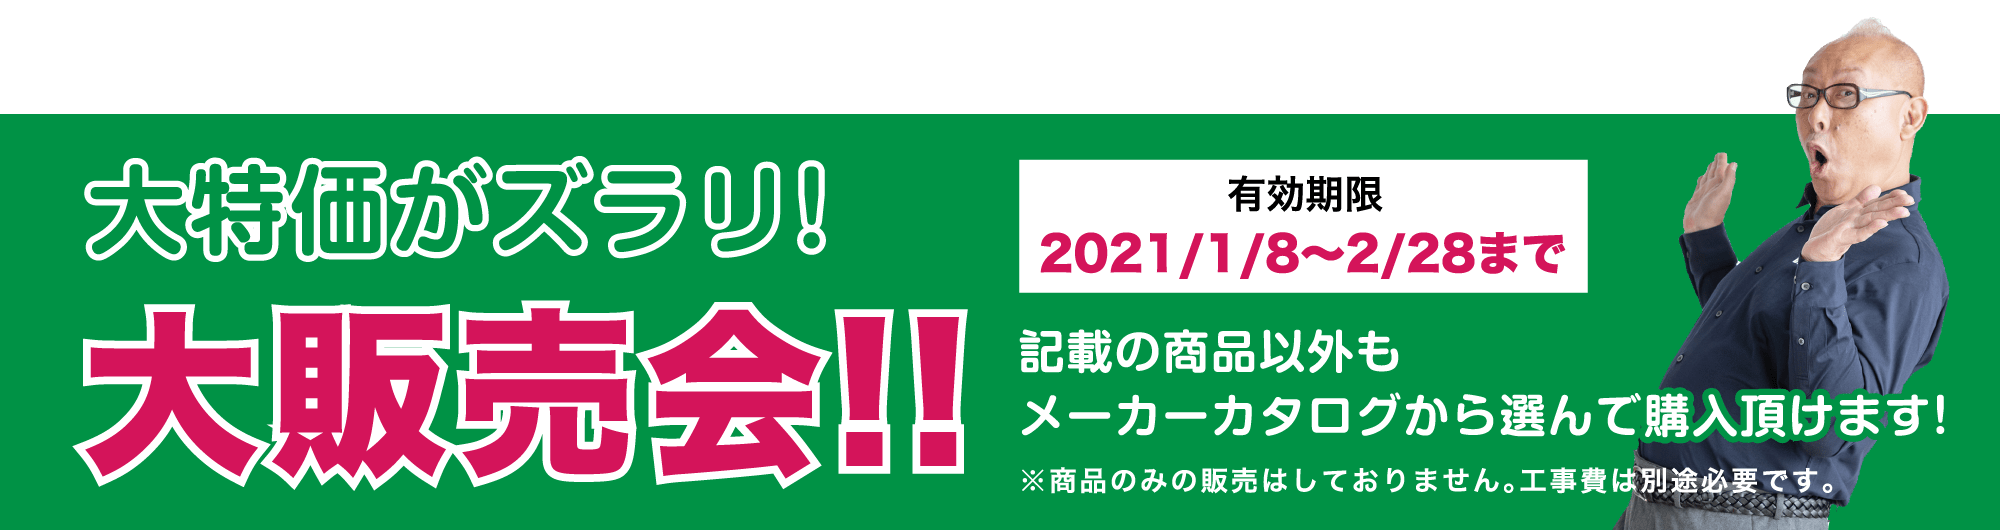 仙台のリフォーム専門店 ダイクショールーム 2021年新春リフォーム初売り祭 販売商品